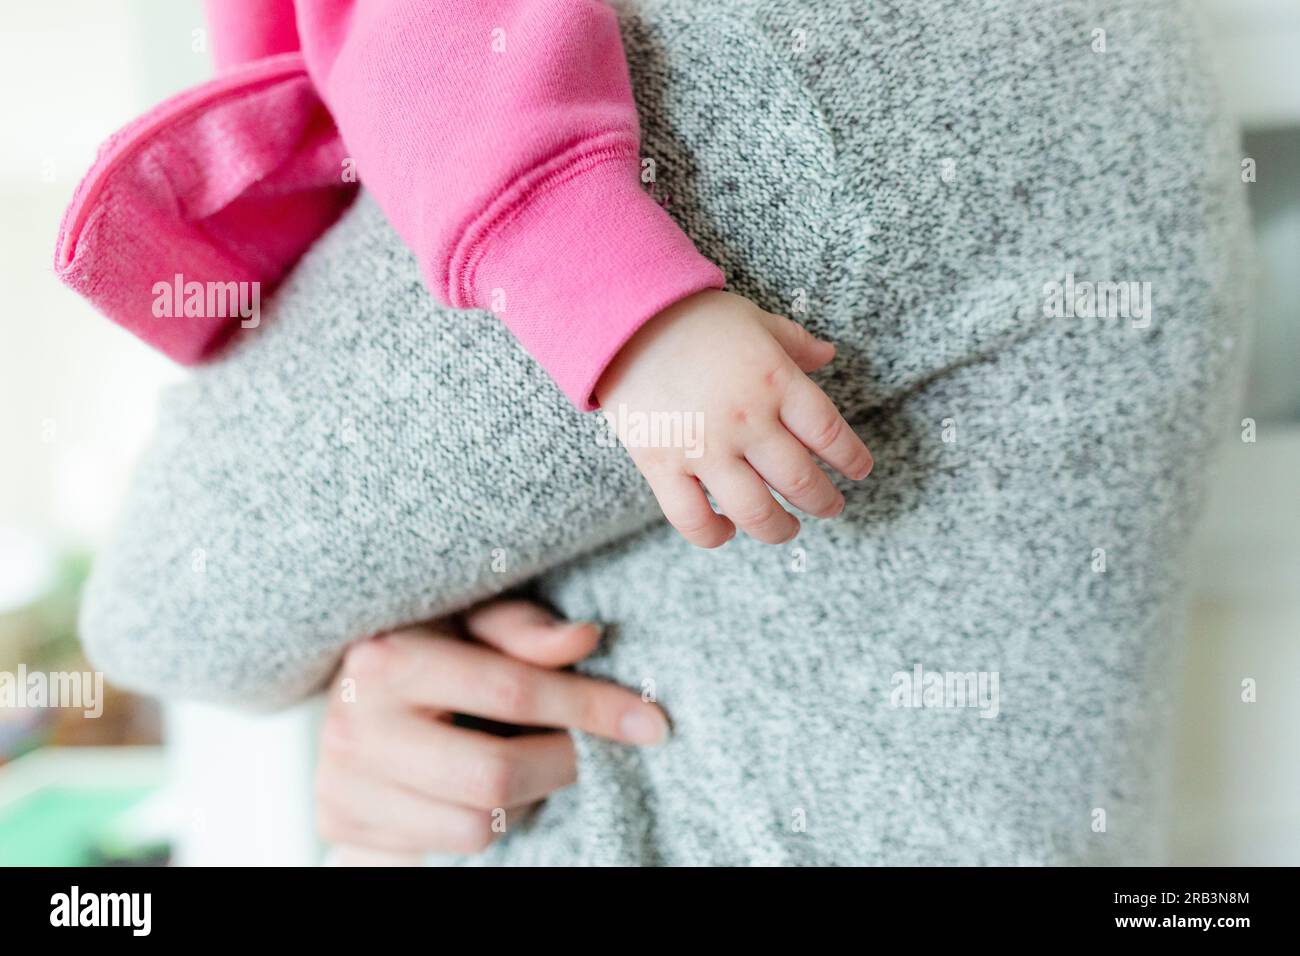 Nahaufnahme der Hand eines kleinen Mädchens, während sie in den Armen der Mutter gehalten wird Stockfoto